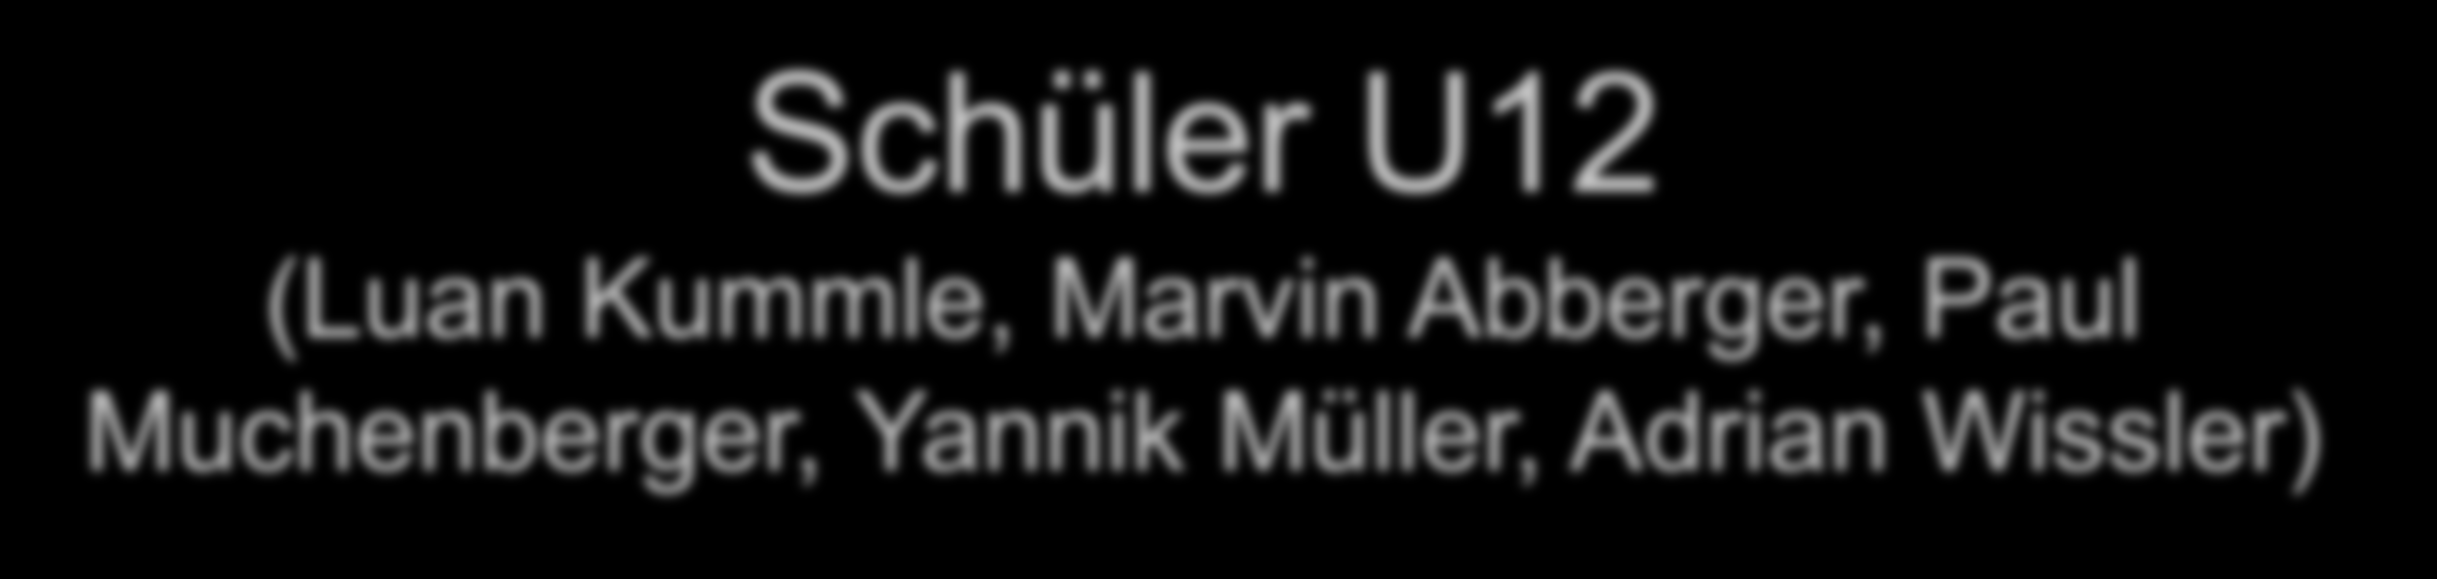 Schüler U12 (Luan Kummle, Marvin Abberger, Paul Muchenberger, Yannik Müller, Adrian Wissler)